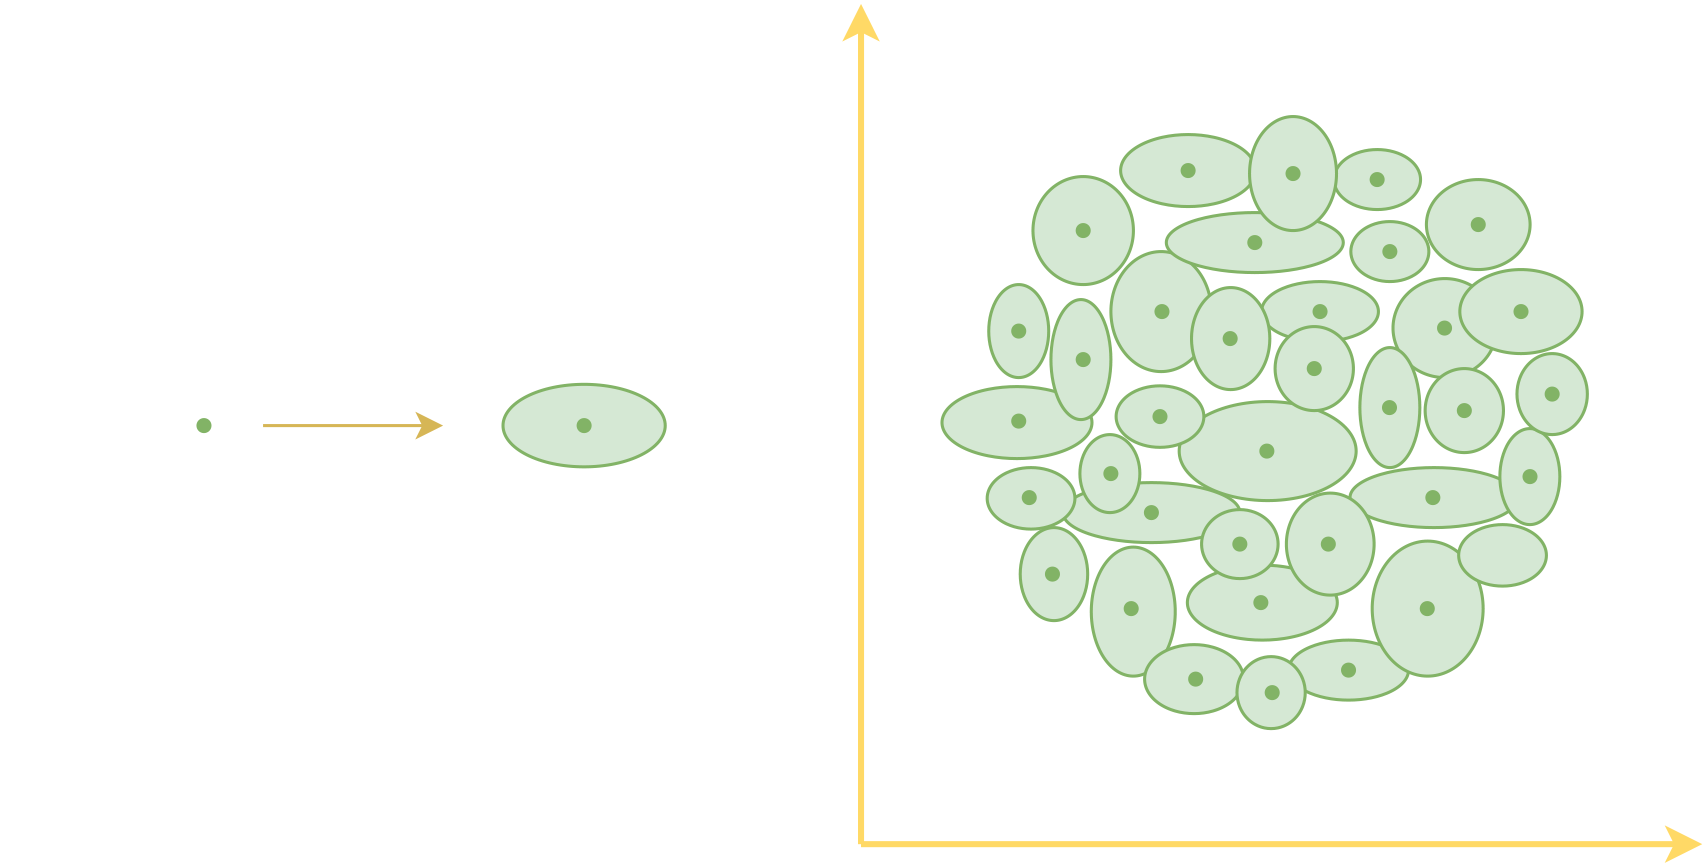 每个样本的编码从一个点变成了一个面（椭圆），于是原本由点覆盖的编码空间变成了由面覆盖